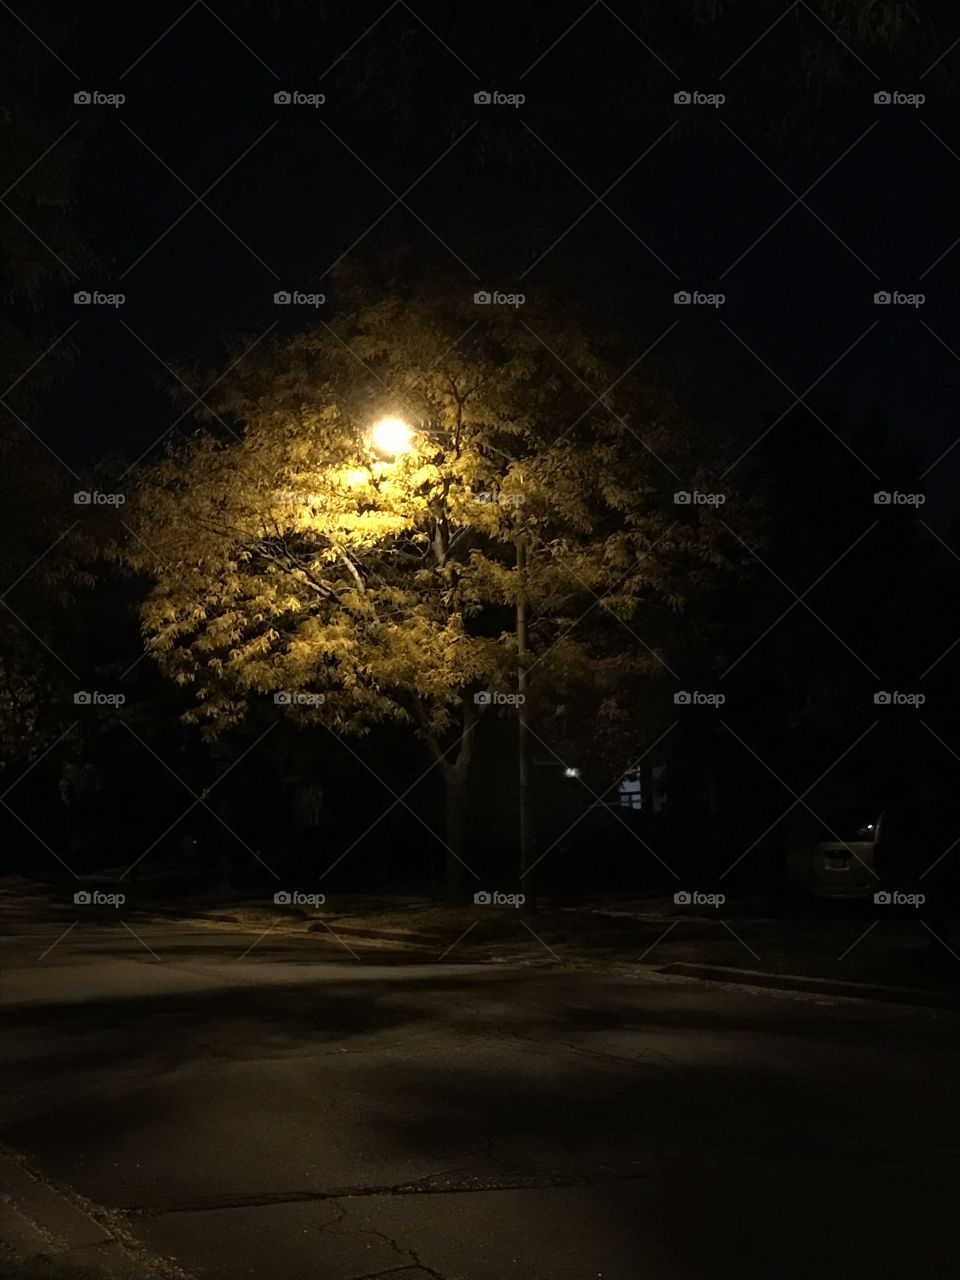 Light & Tree